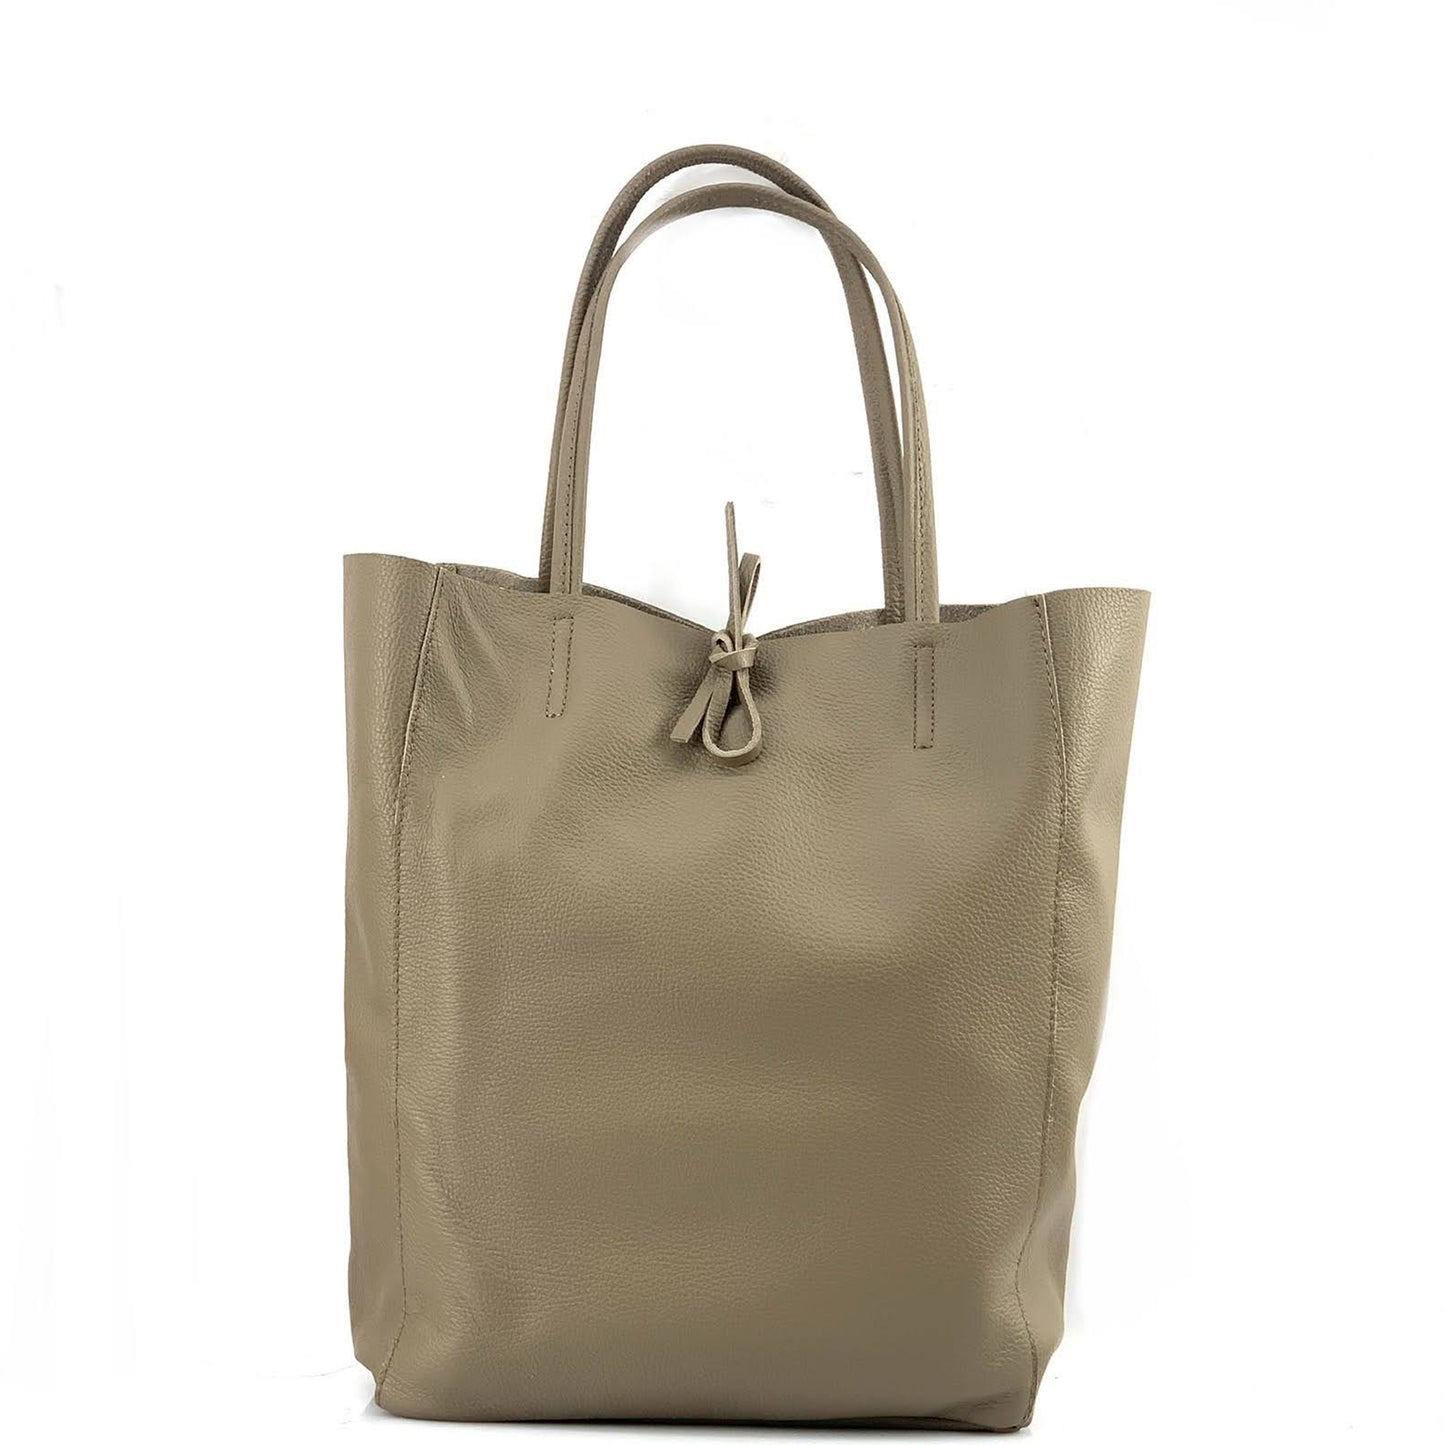 Blake Shopper Bag - 17 Farben